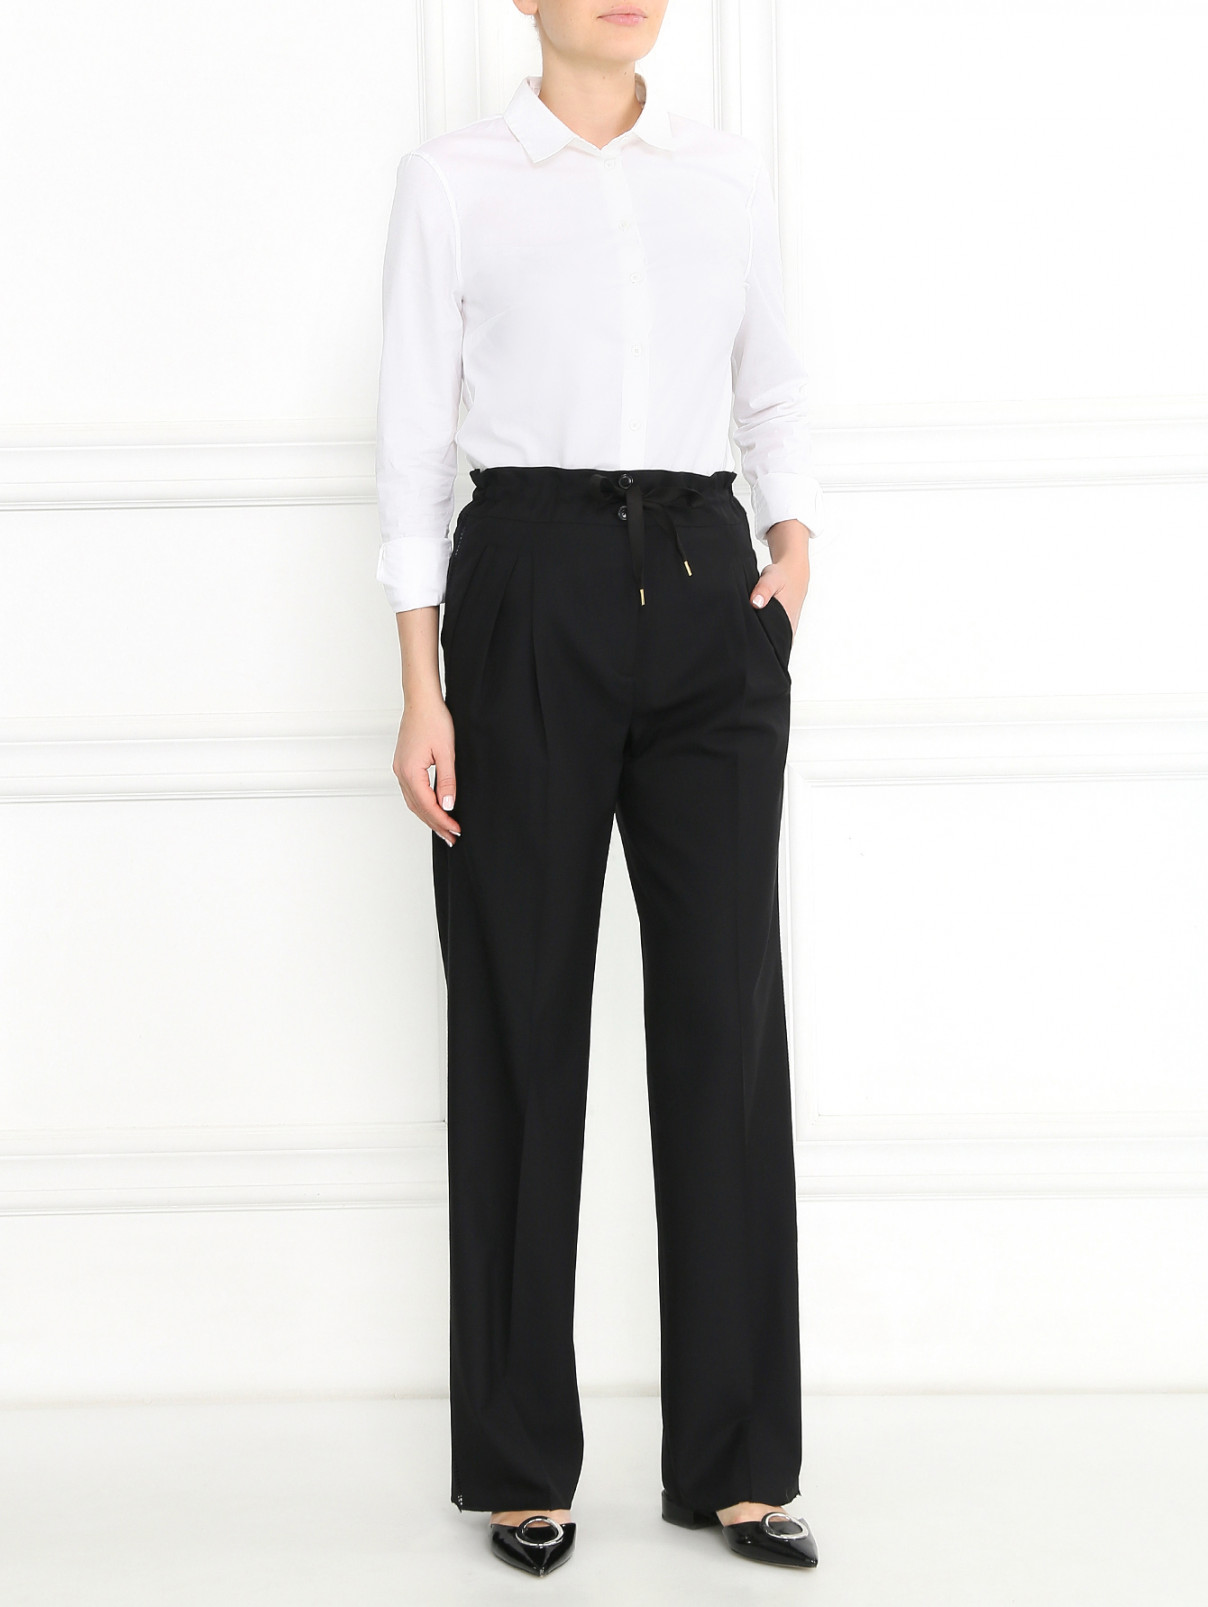 Широкие брюки из шерсти на кулиске Paul Smith  –  Модель Общий вид  – Цвет:  Черный